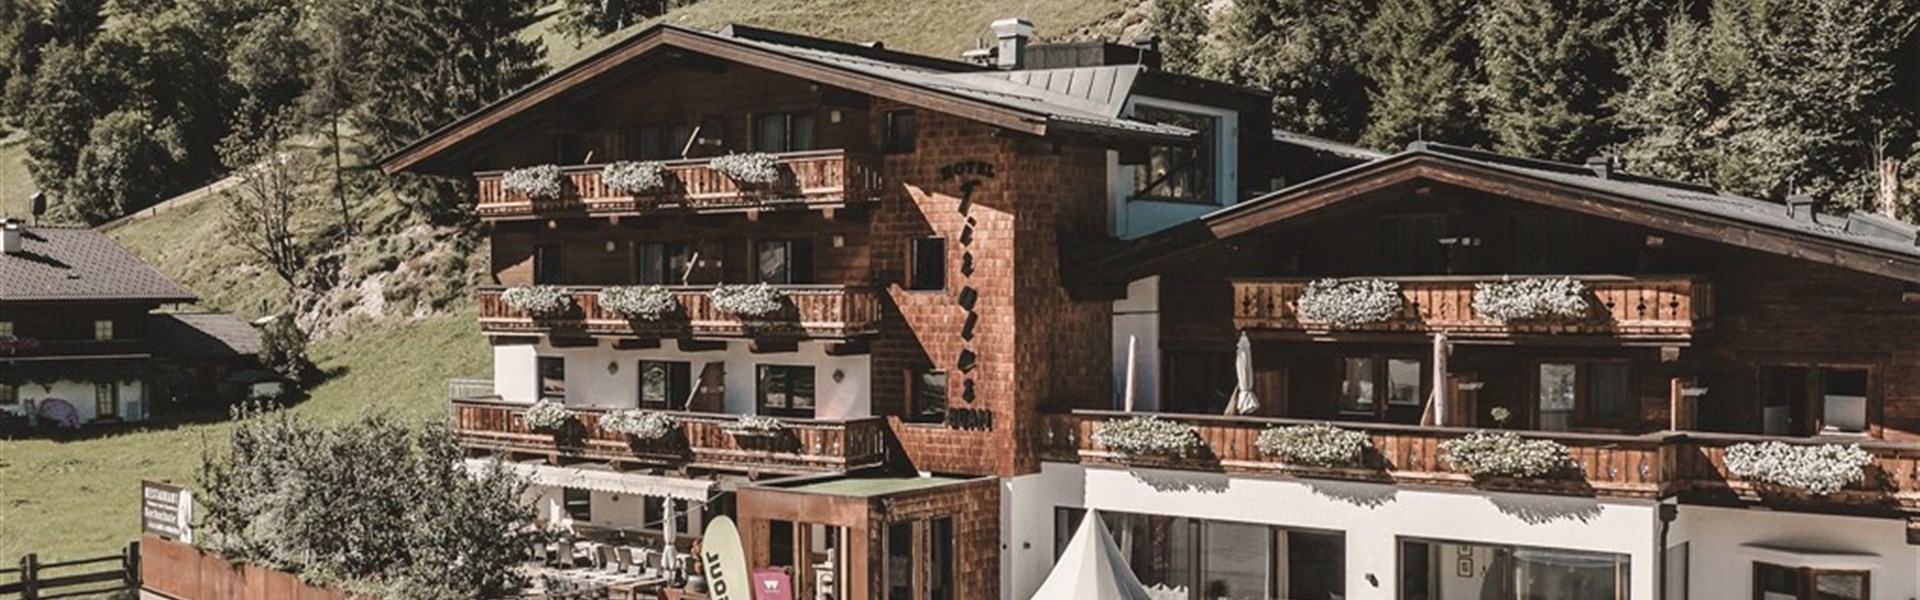 Marco Polo - Hotel Tiroler Buam (S) - 